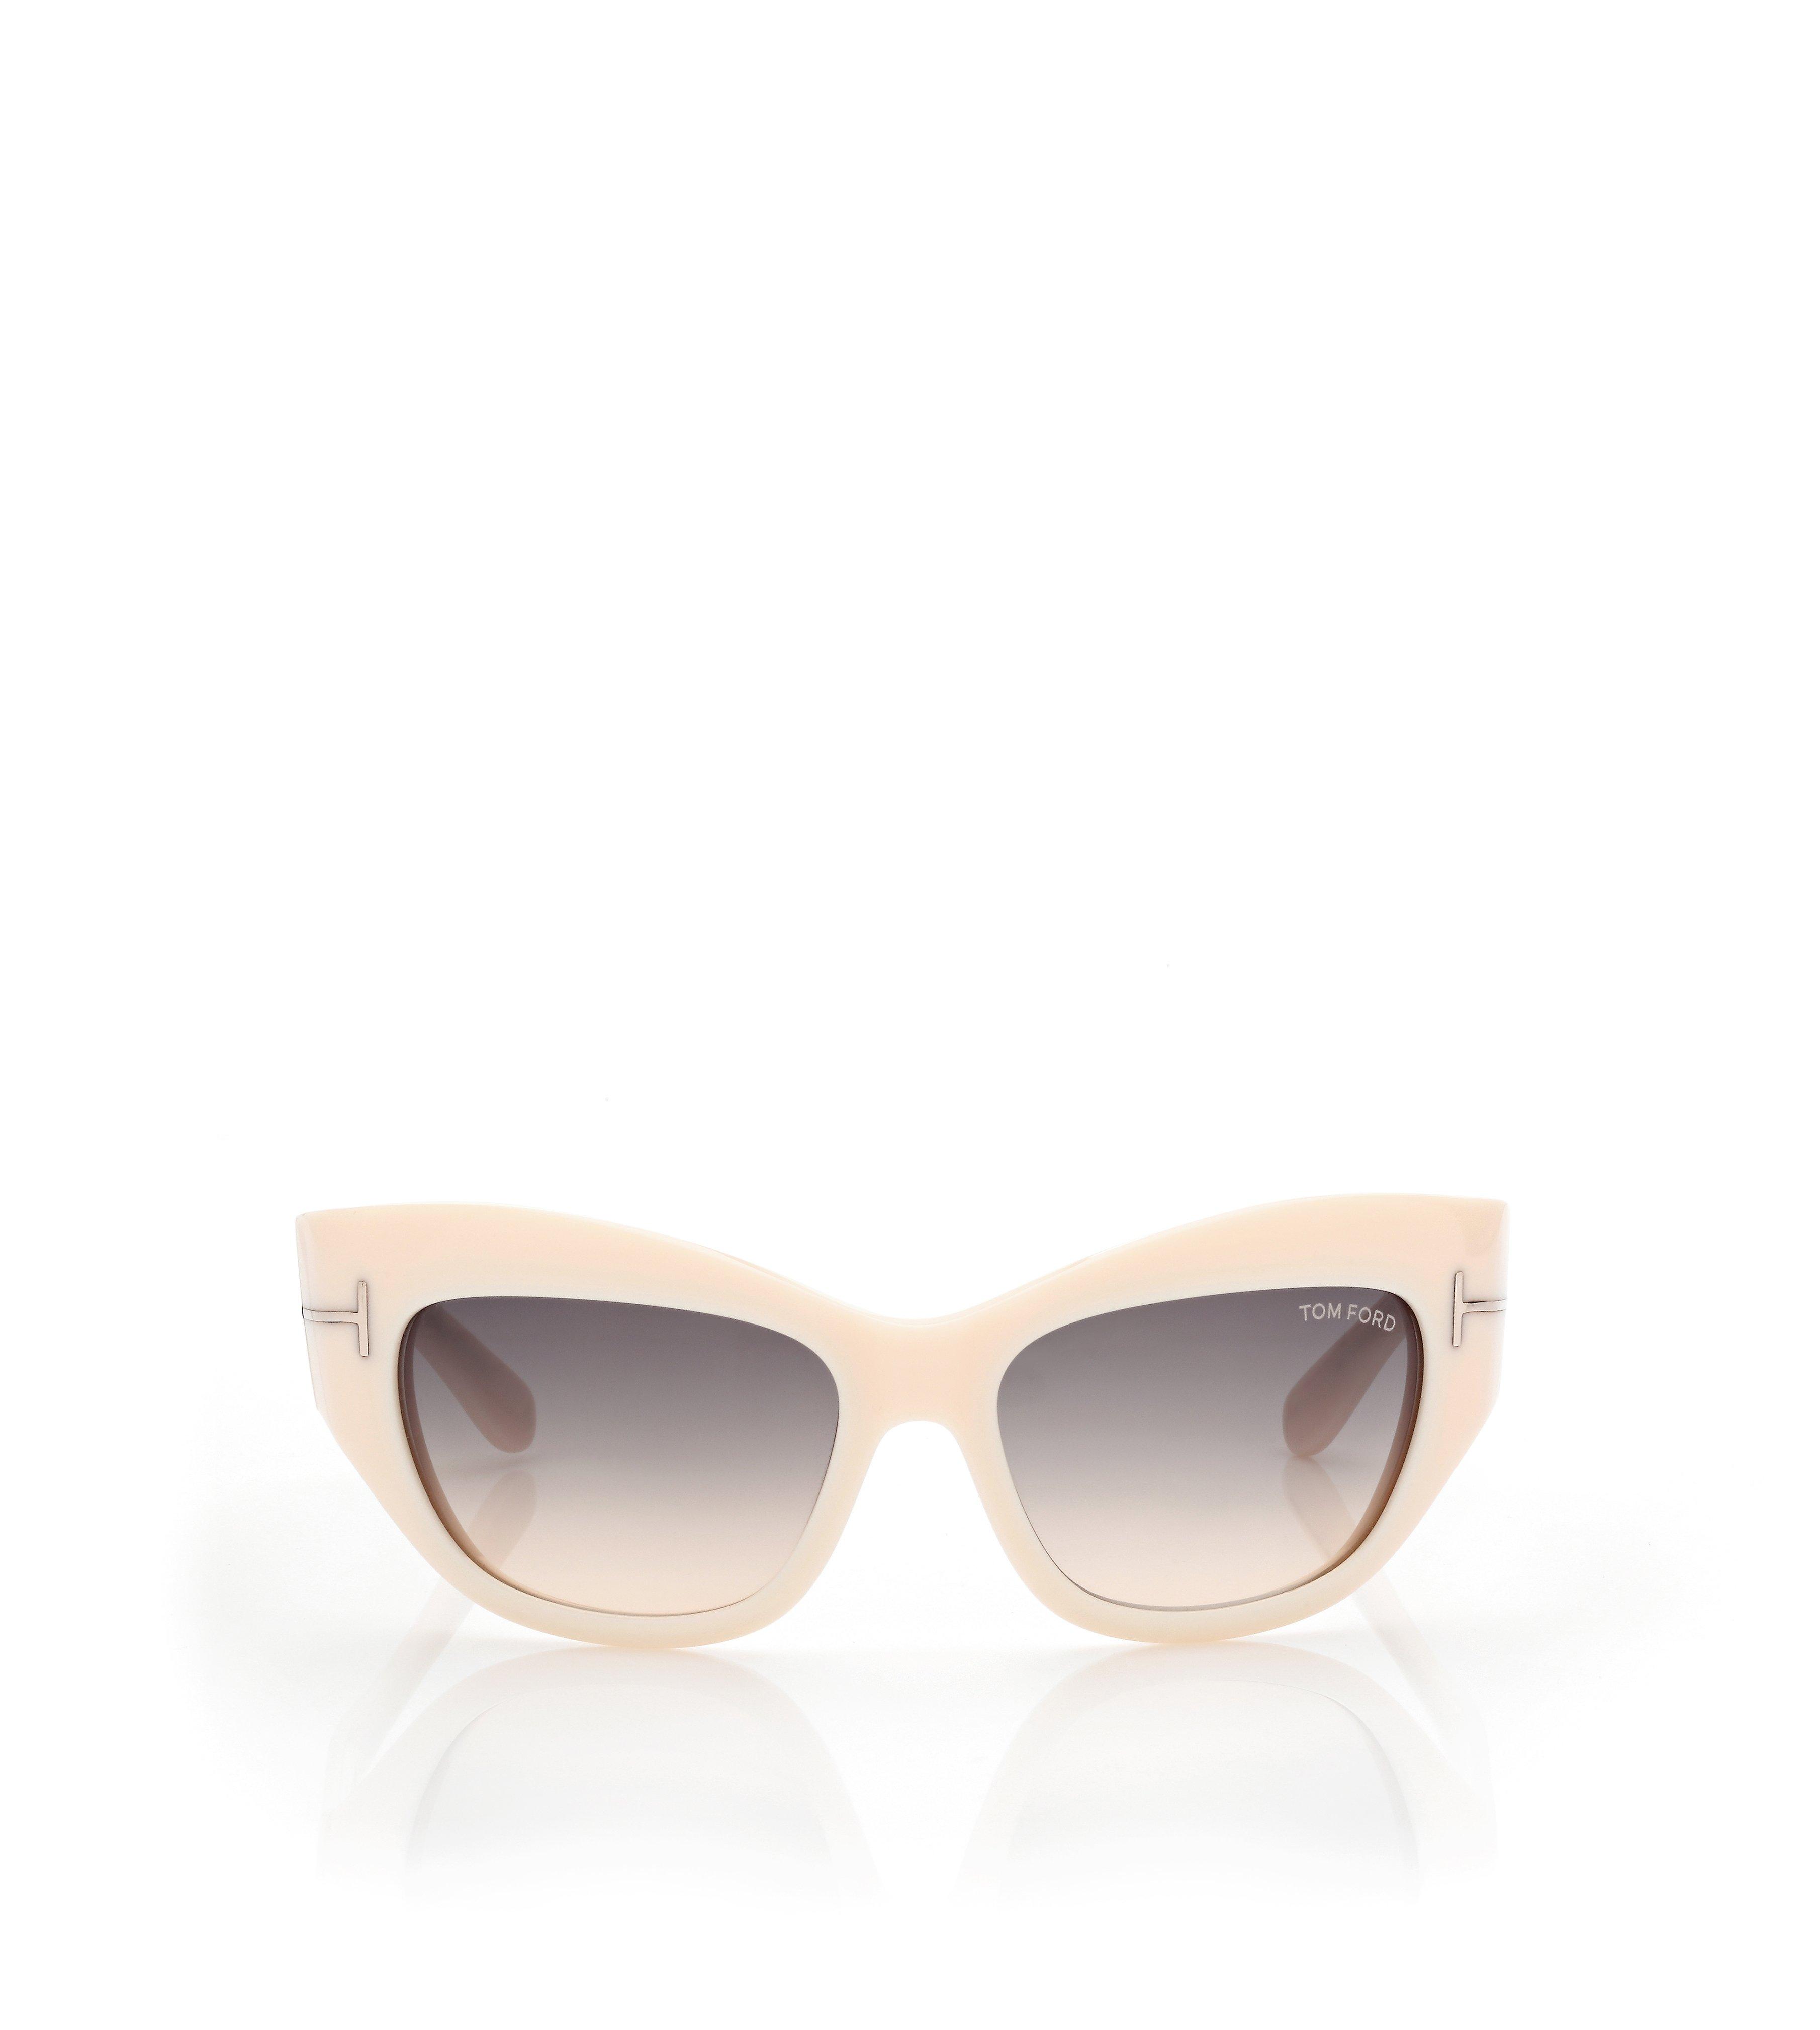 Tom Ford Sunglasses  Buy Tom Ford Sunglasses Online